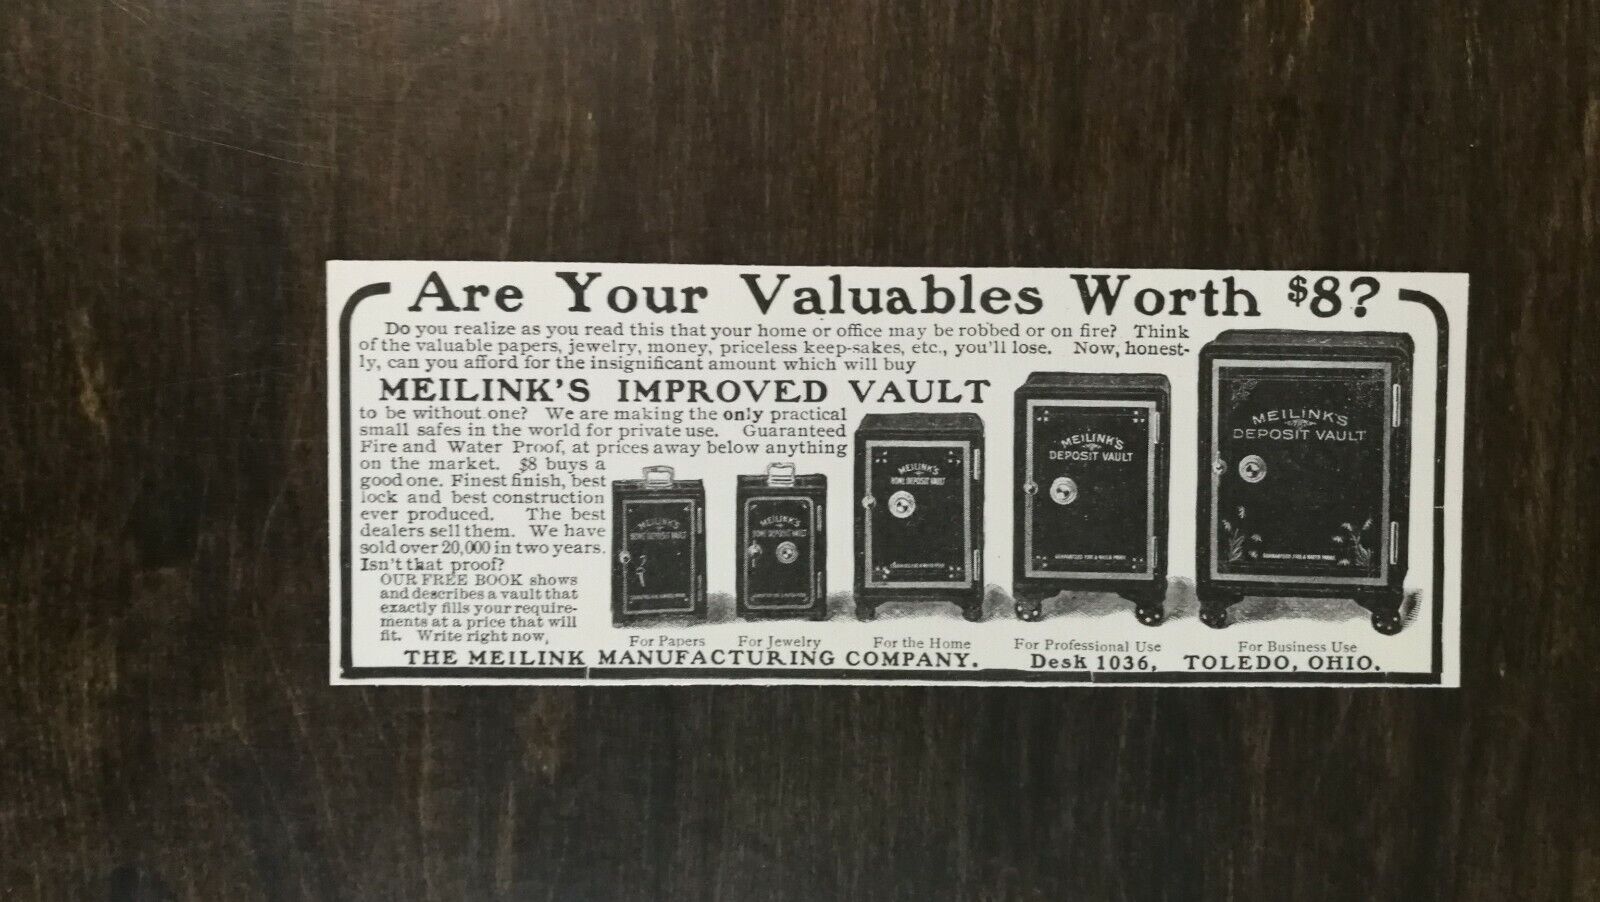 Vintage 1904 Meilink Deposit Vault Meilink Manufacturing Co. Original Ad - 721